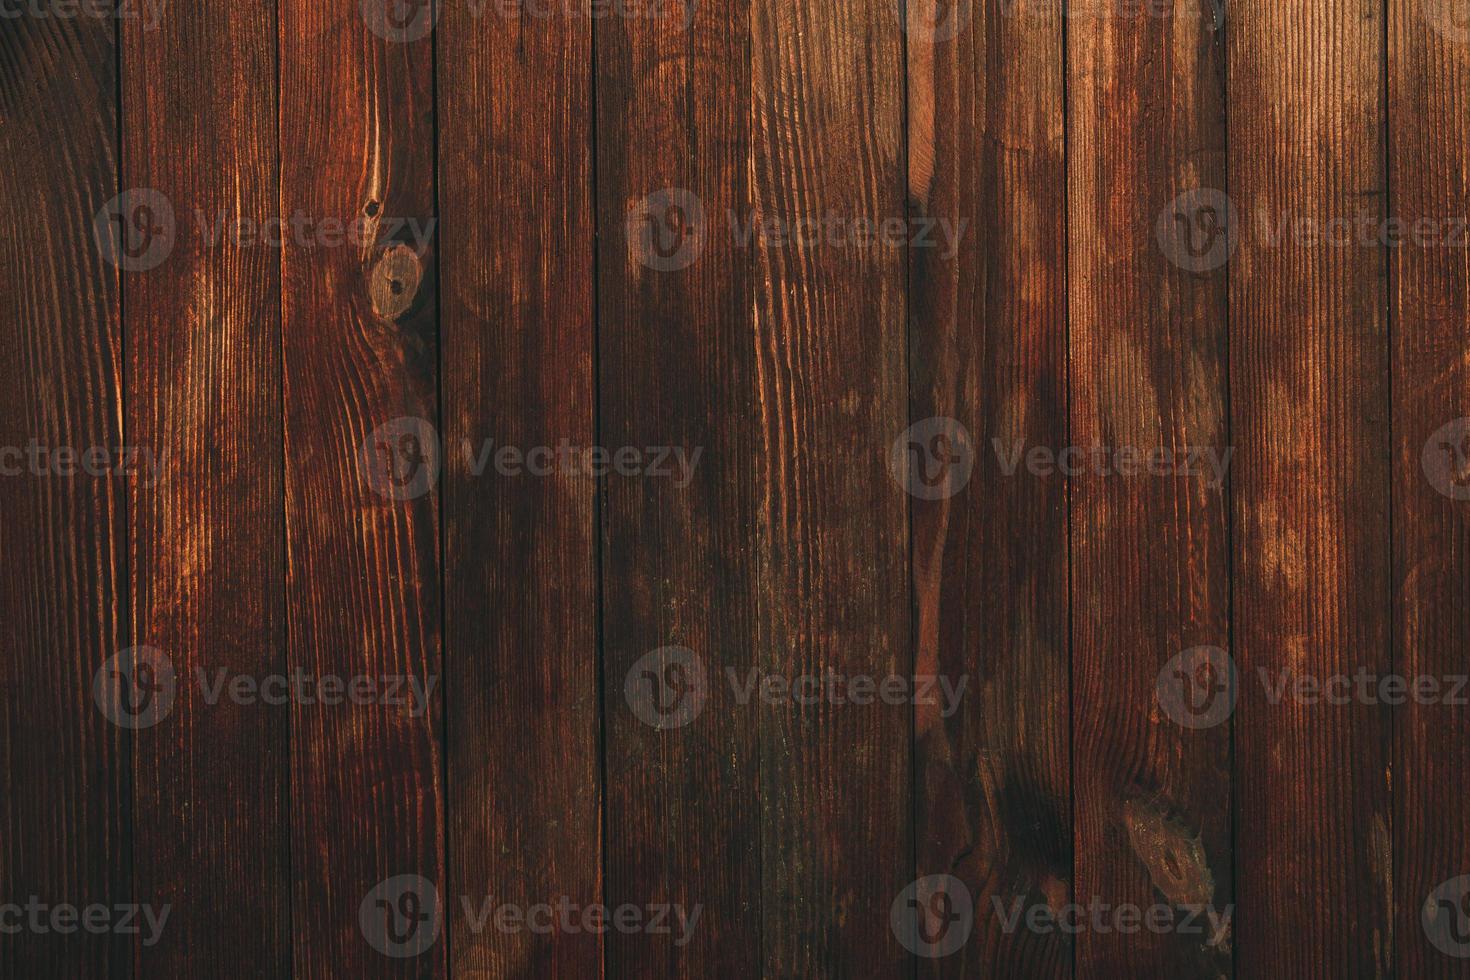 textura de fundo de madeira marrom vintage com nós e furos de prego. parede de madeira pintada velha. abstrato marrom. placas horizontais escuras de madeira vintage. vista frontal com espaço de cópia foto